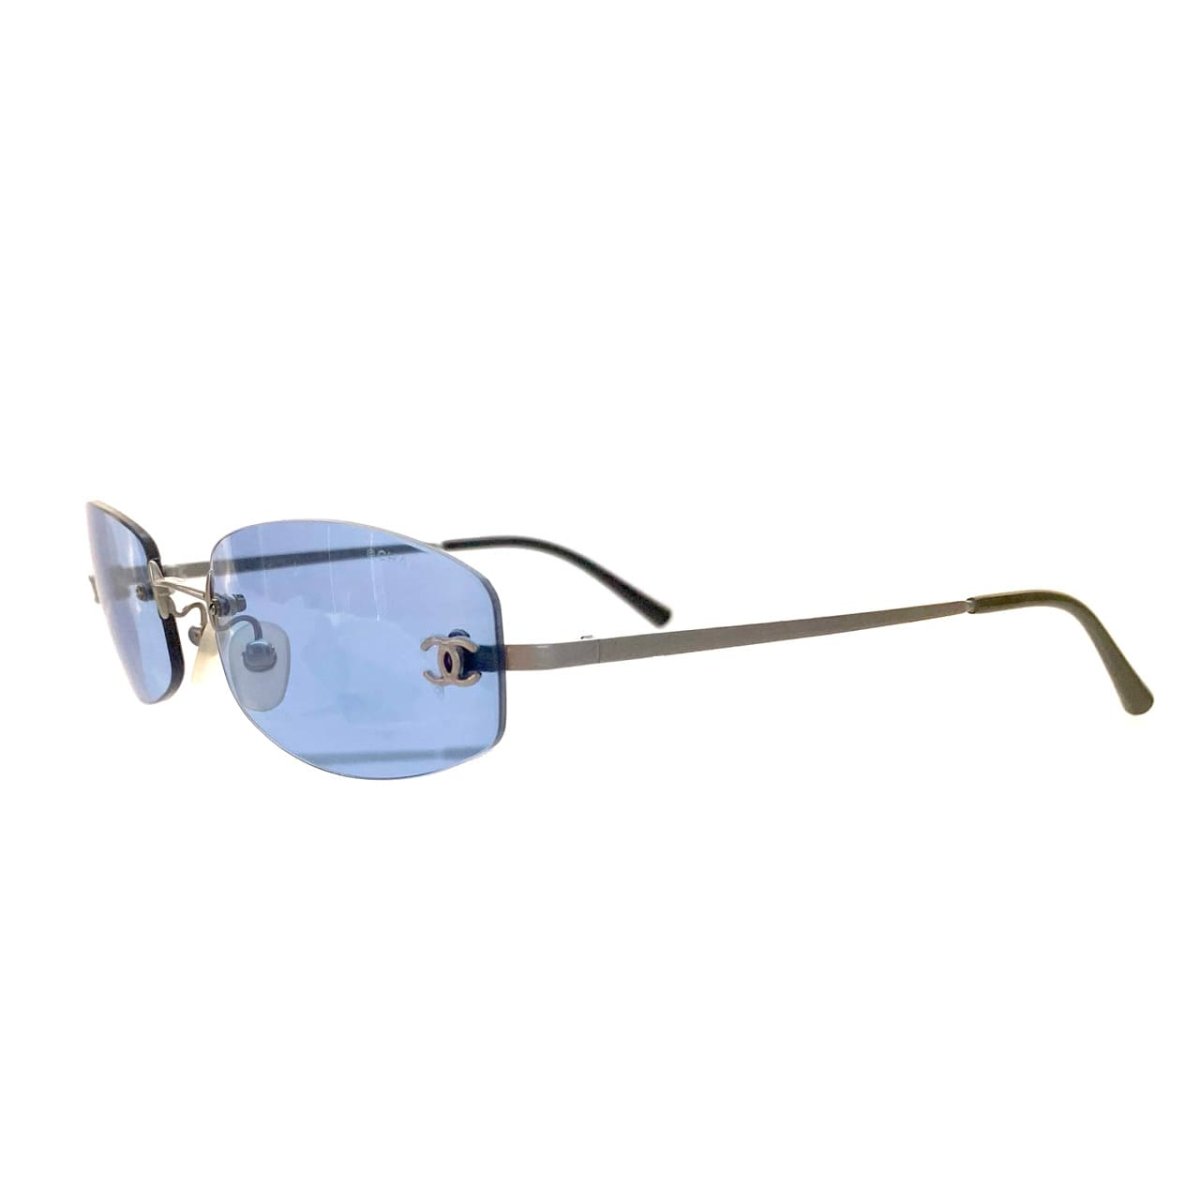 CHANEL シャネル サングラス CHANEL Sunglasses /23062105